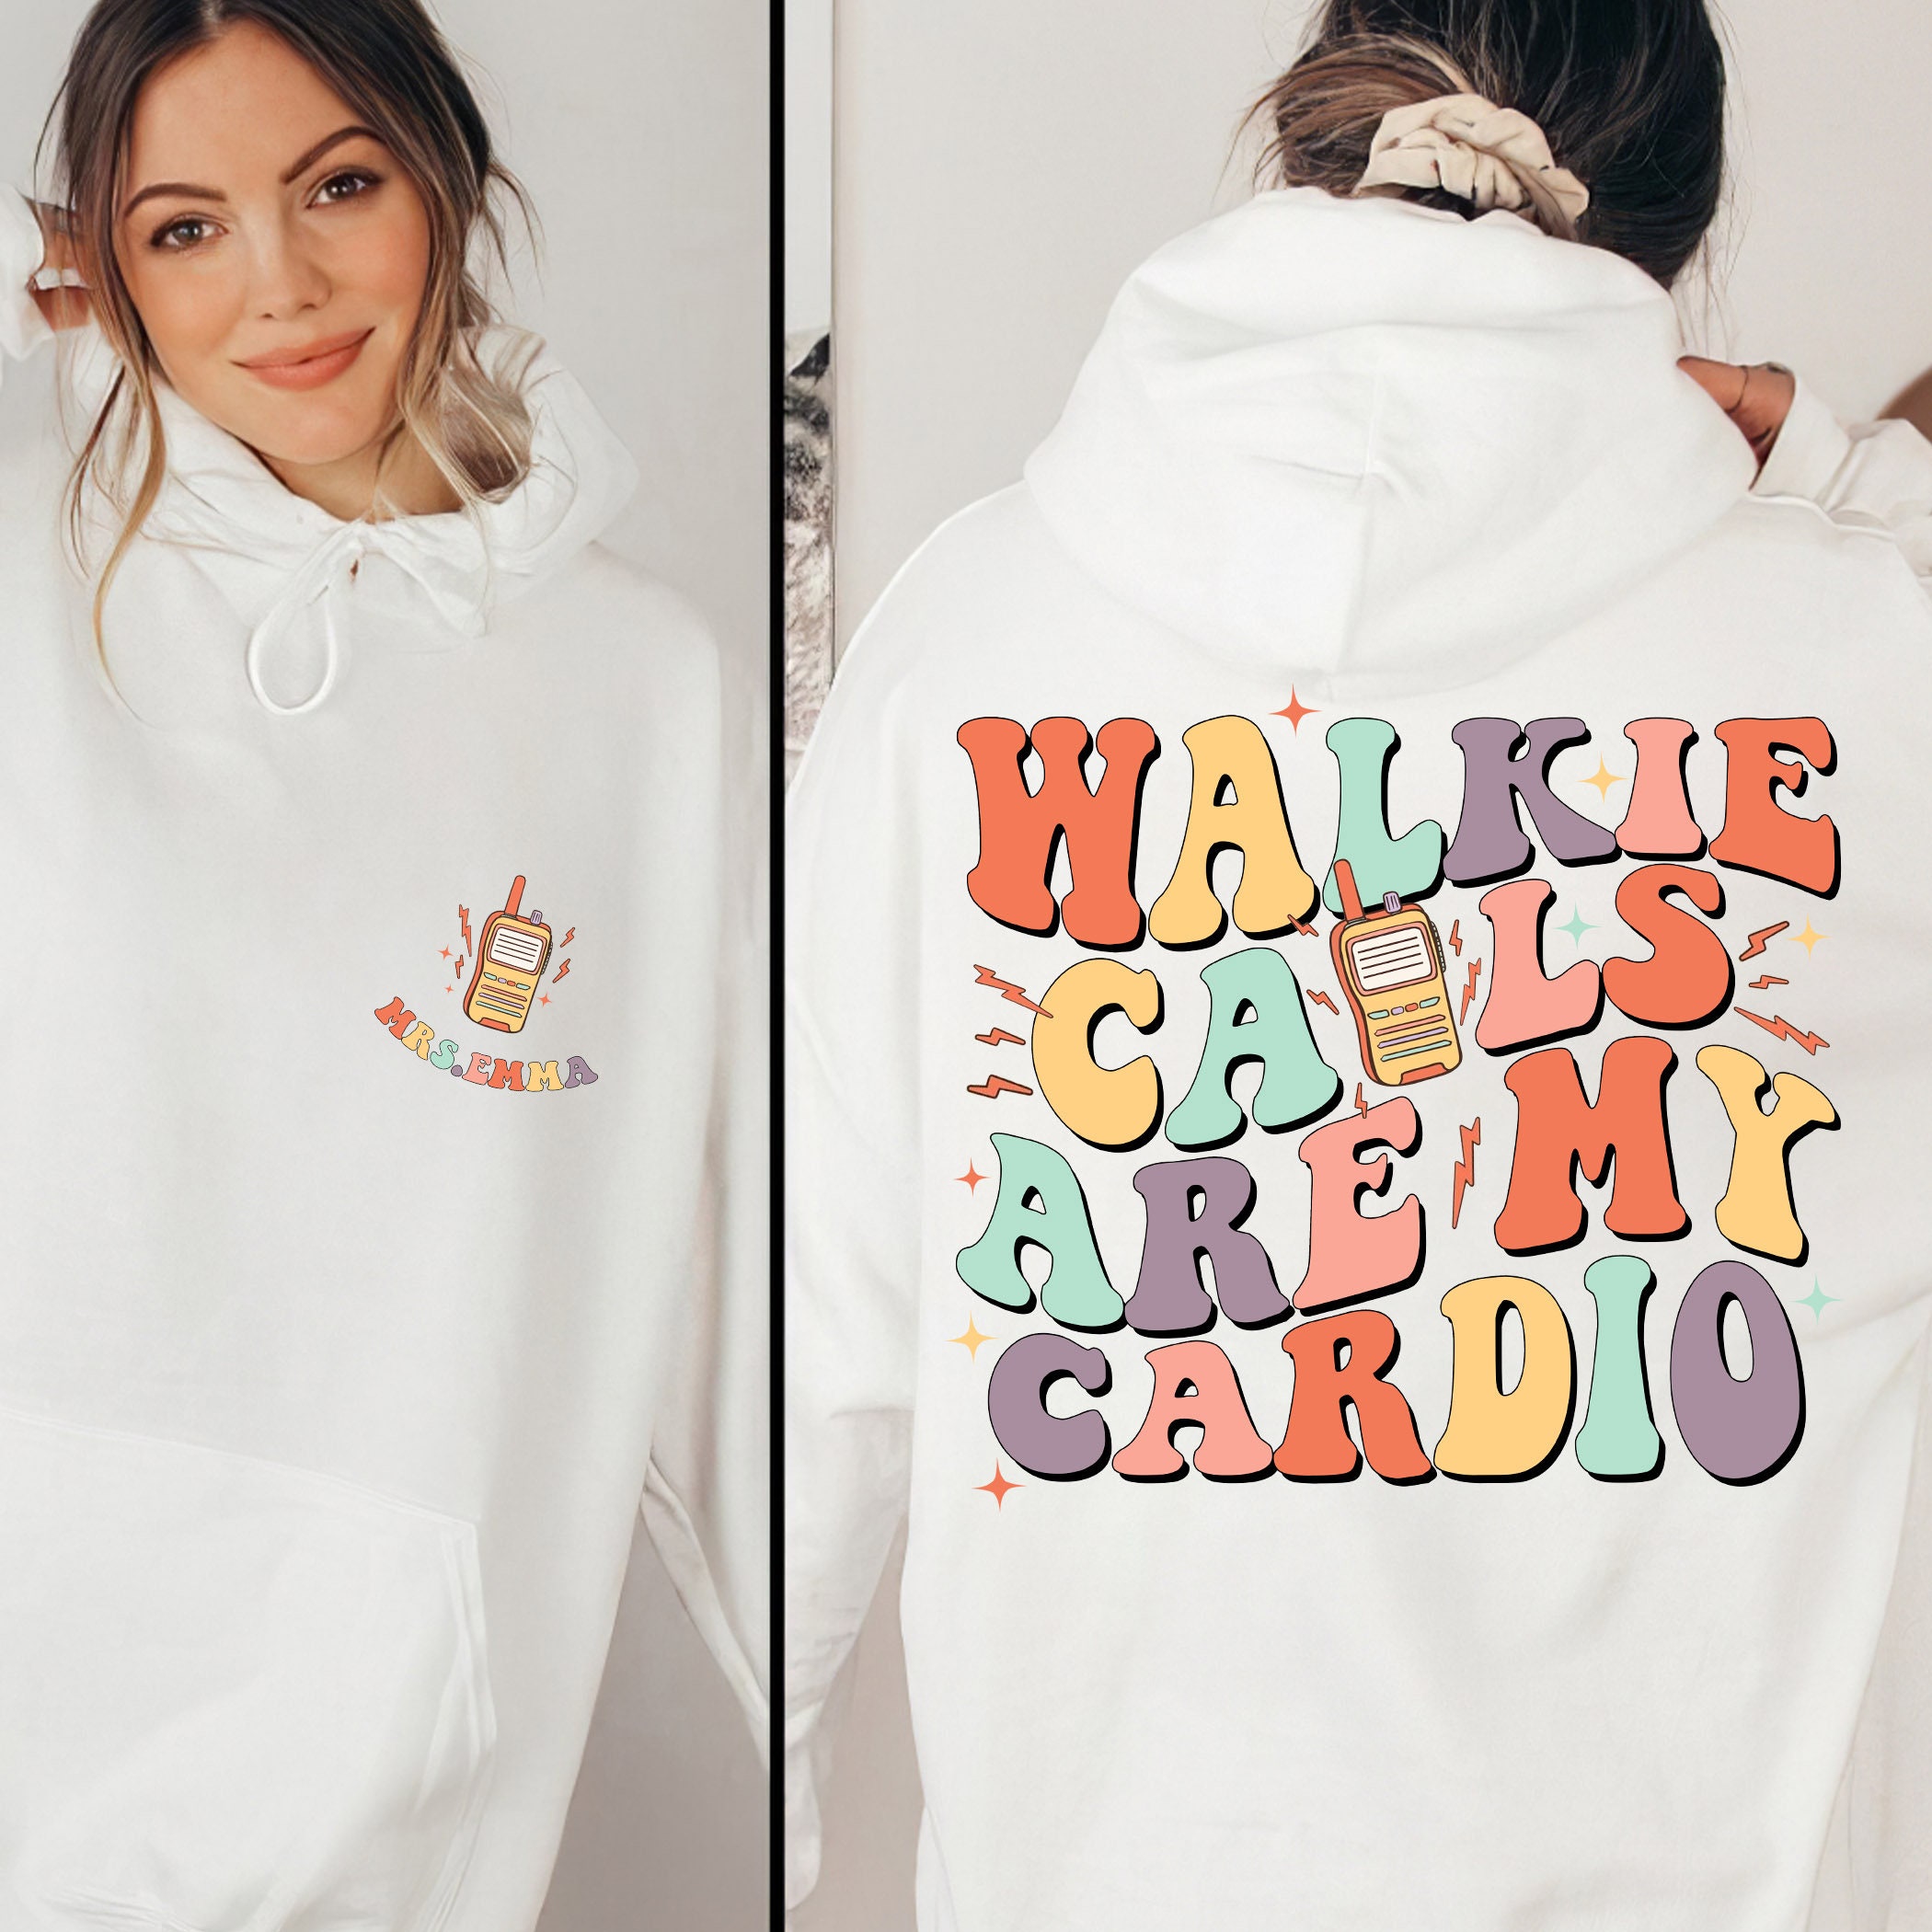 Walkie Calls Are My Cadio Shirt, Custom Sped Teacher Sweatshirt